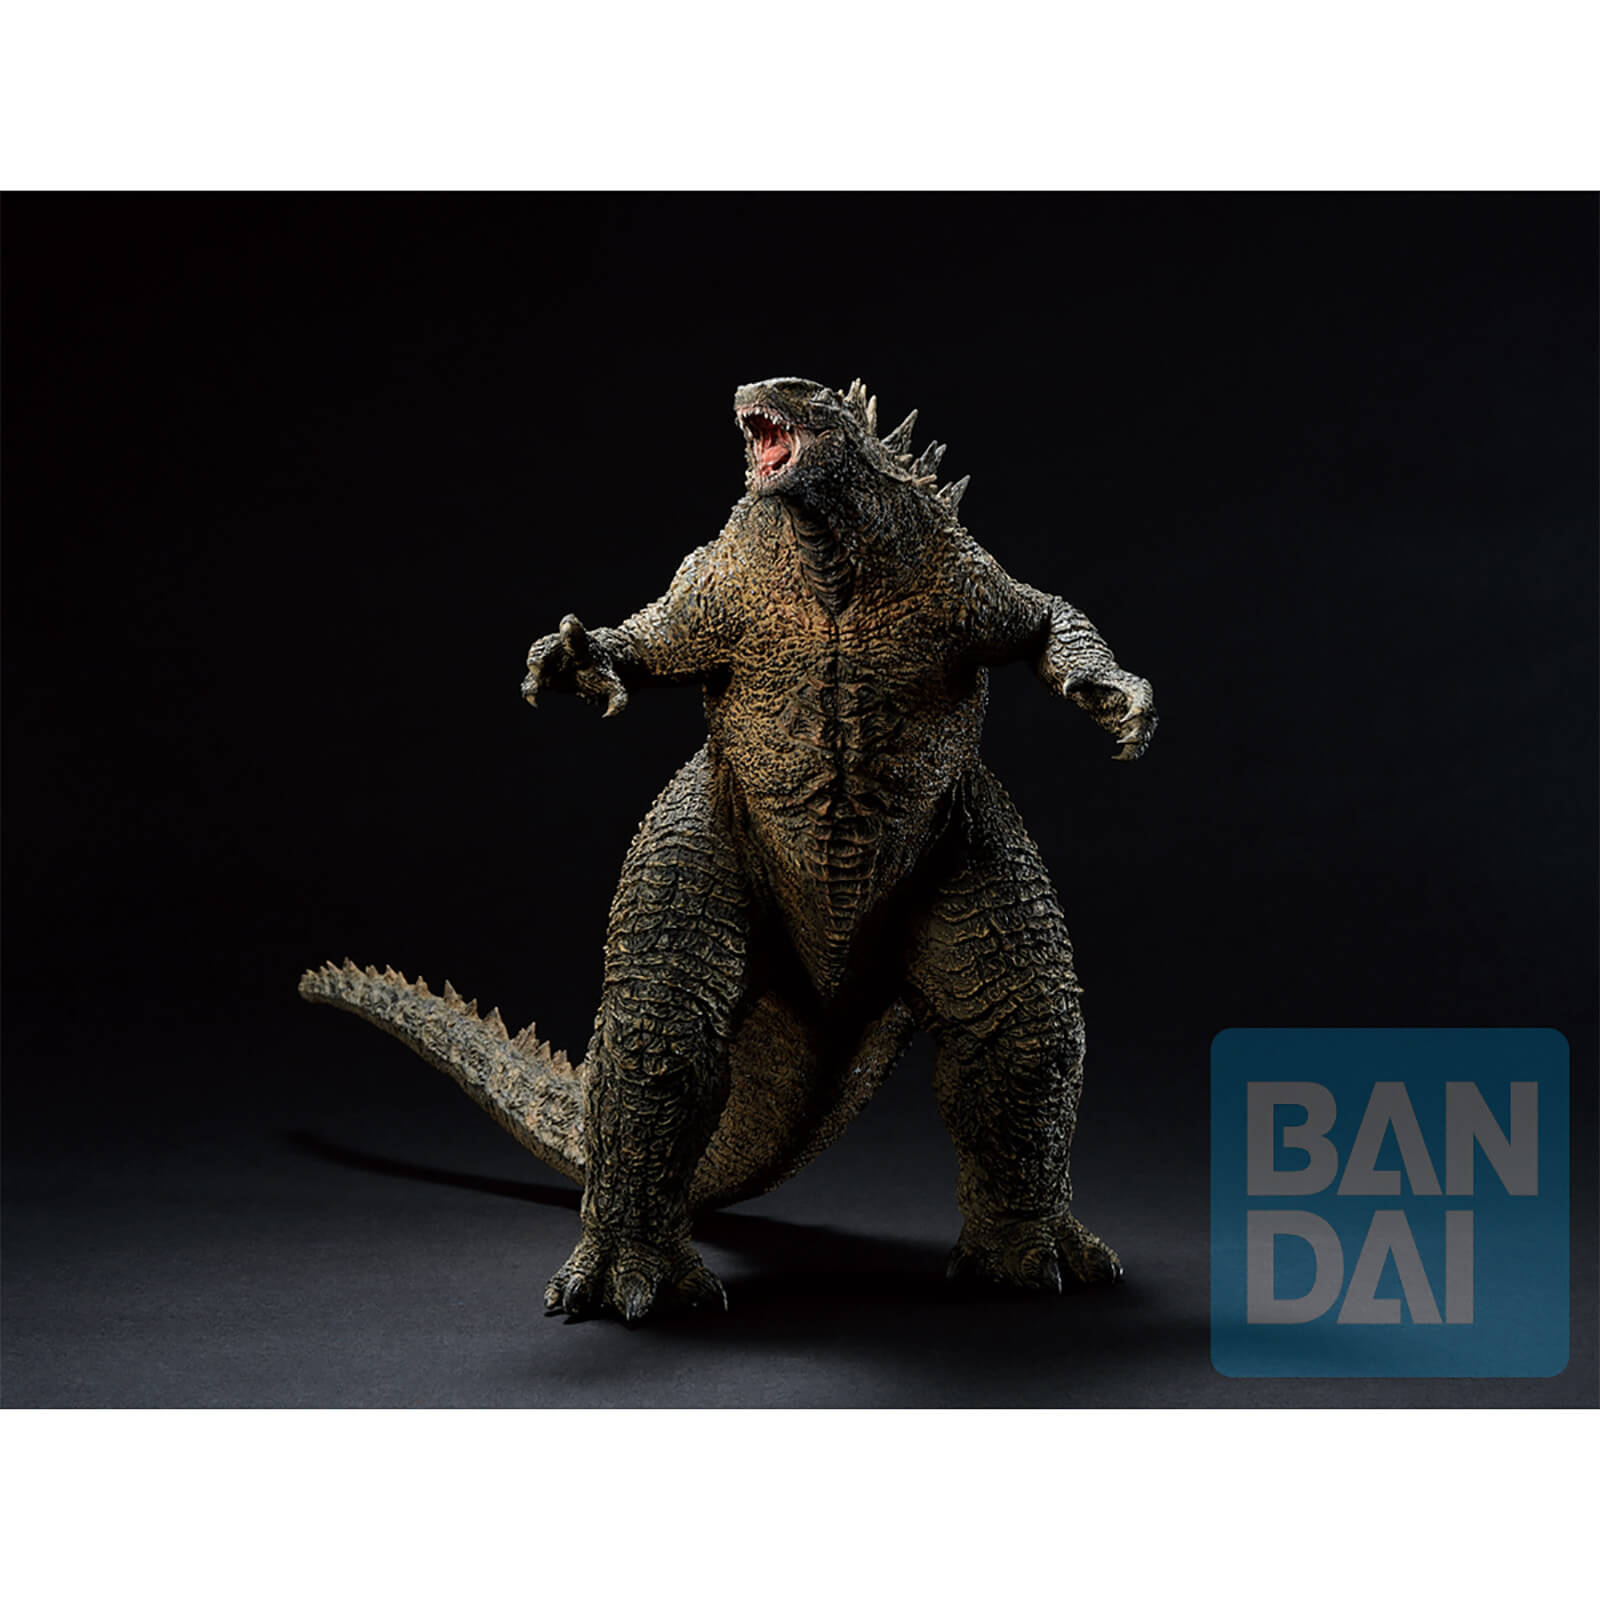 Image of Bandai Ichibansho Figure (Godzilla vs Kong) Godzilla Statue - 20cm